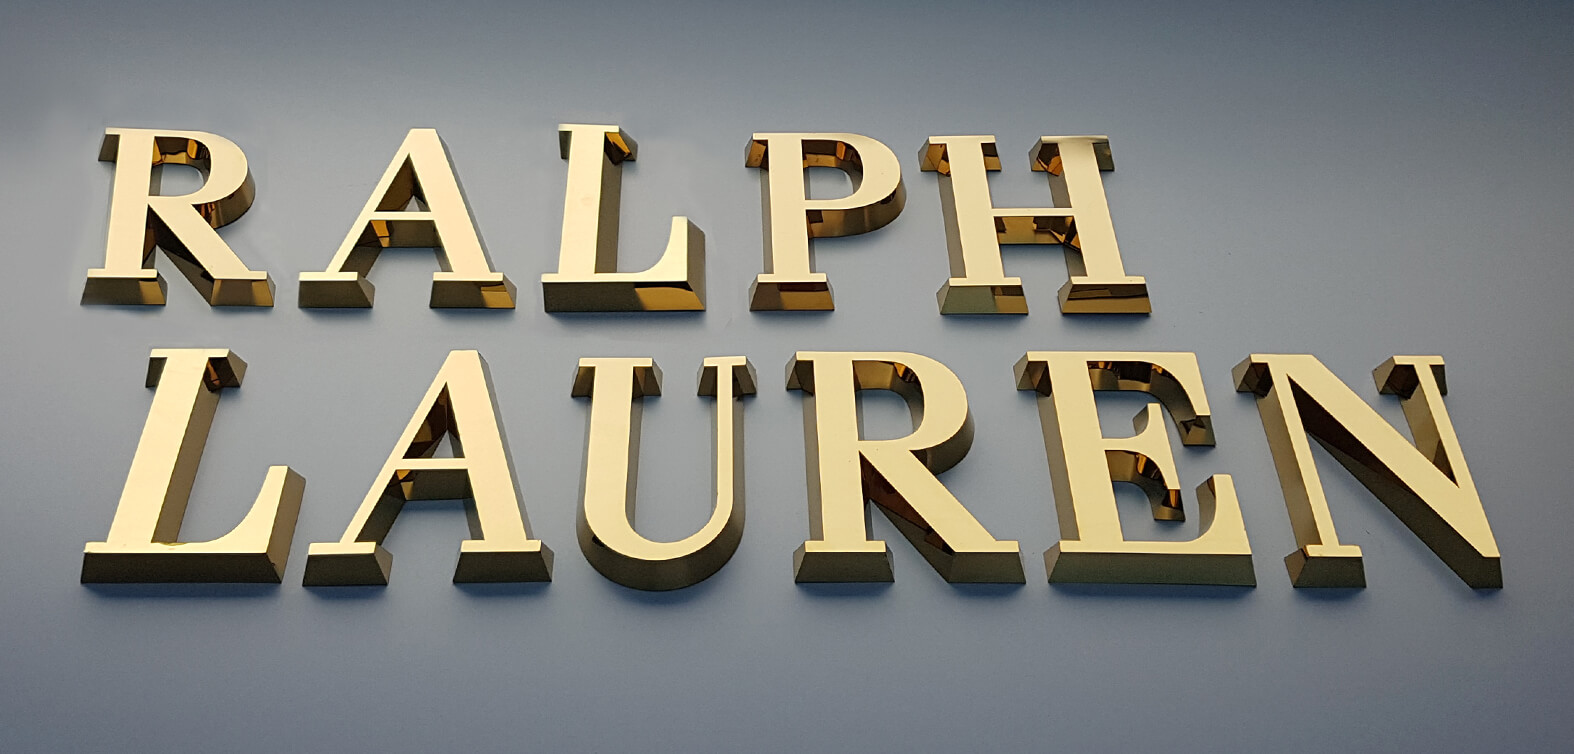 Ralph Lauren - Ralph Lauren - złote litery przestrzenne wykonane z blachy nierdzewnej